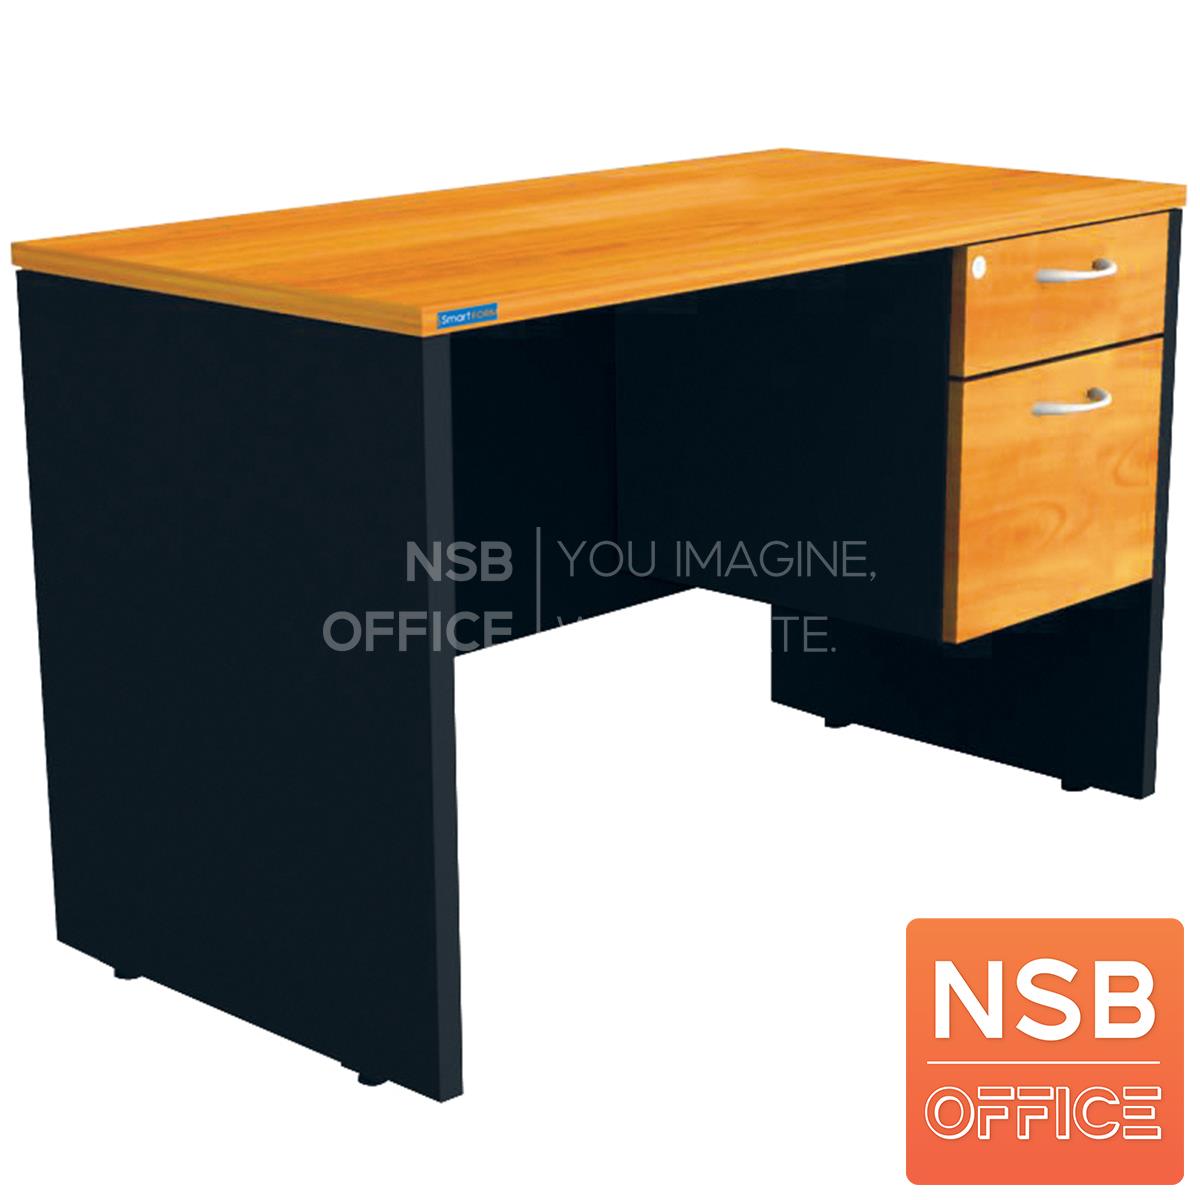 โต๊ะทำงาน 2 ลิ้นชัก รุ่น Nilsson (นิลส์ซัน) ขนาด 120W*60D*75H cm. เมลามีน สีเชอร์รี่ดำ